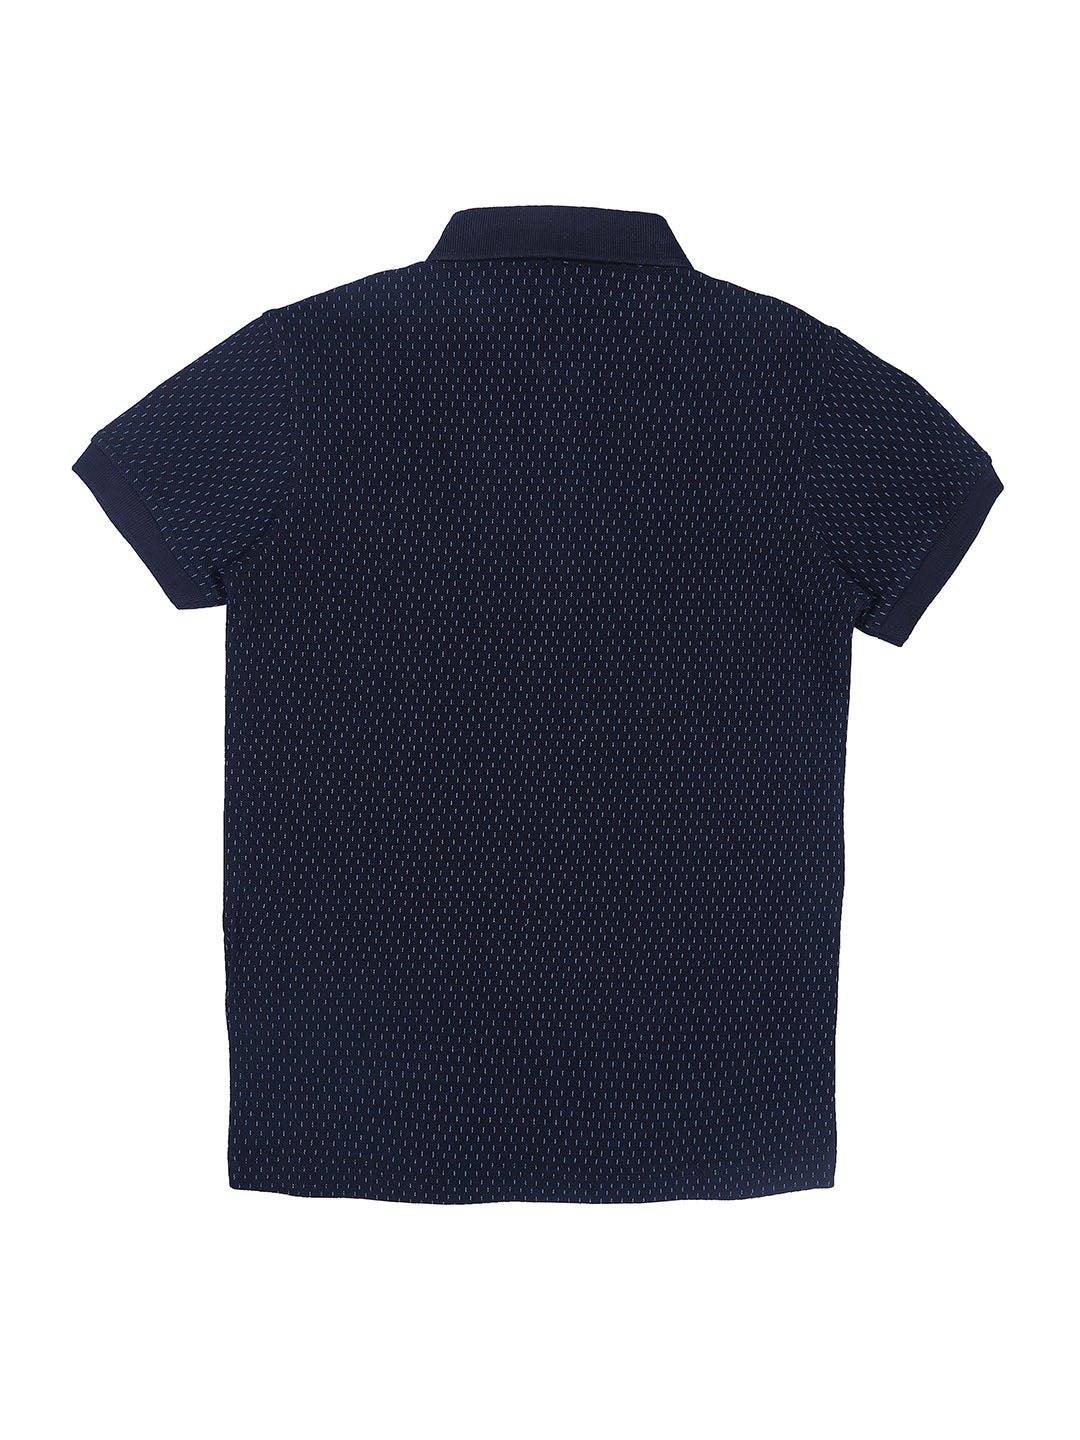 Boys Blue Knits Printed Half Sleeves Polo T-Shirt